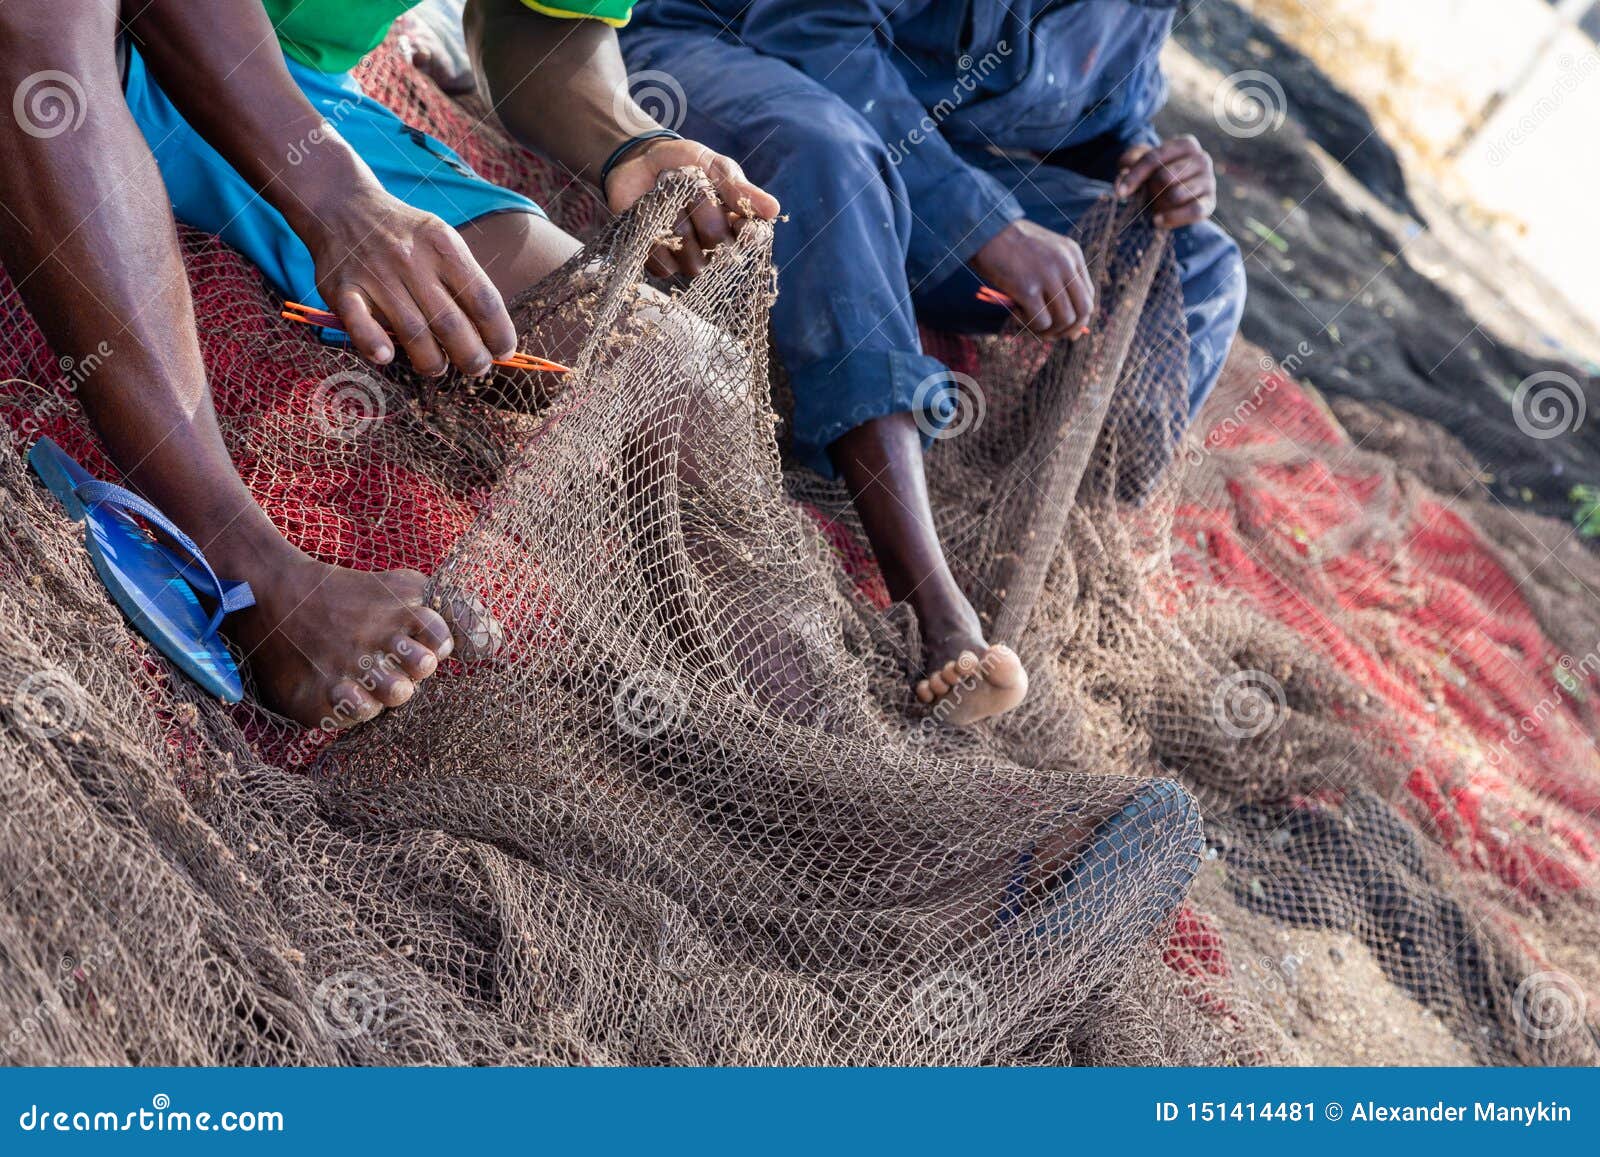 Fishermans Mending Nets. Burgundy, Black, White, Gray Stock Image